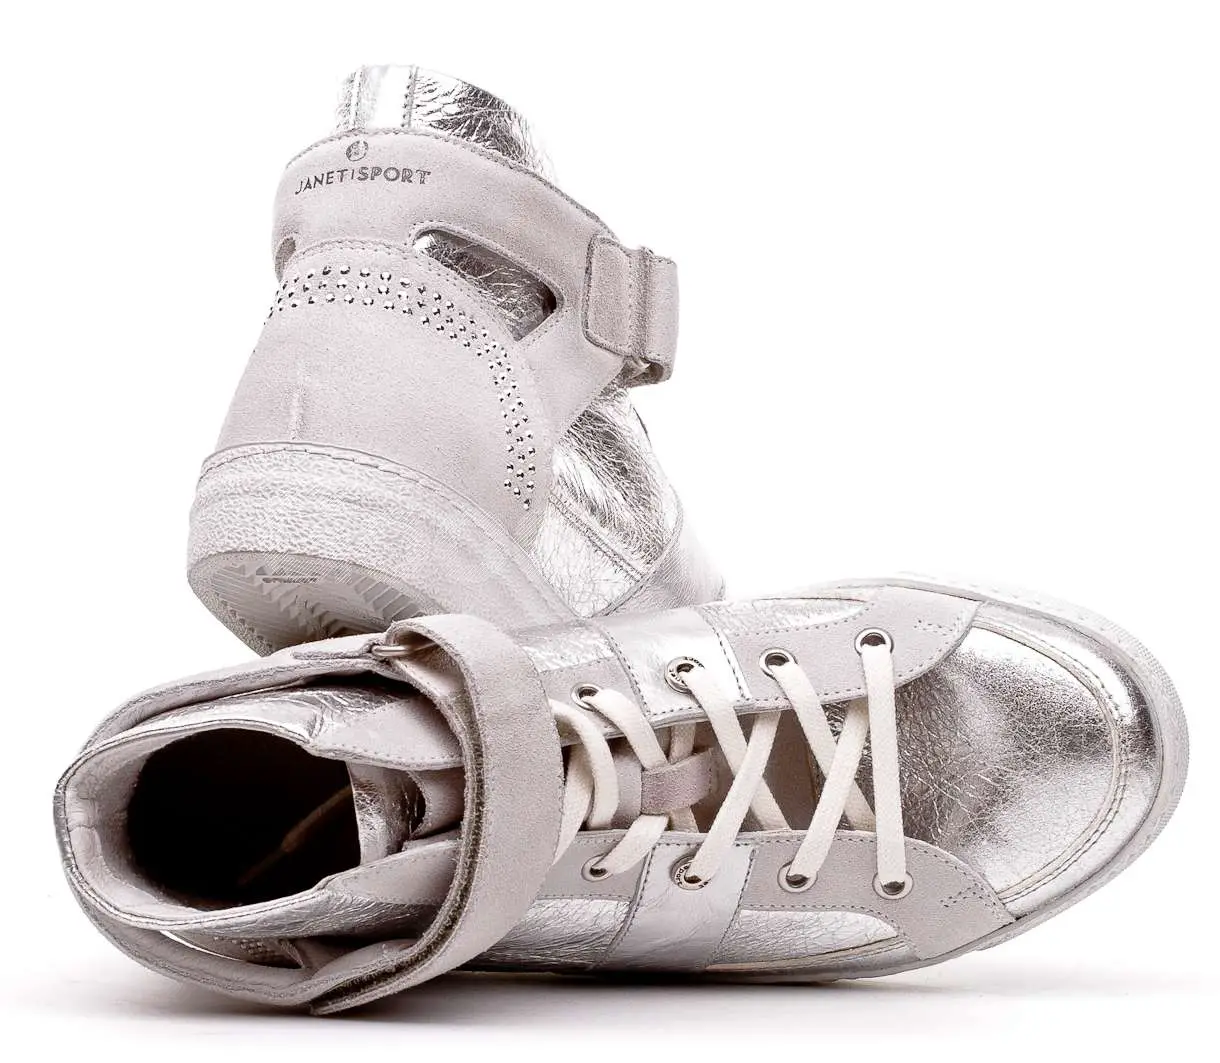 Janet Sport Italian silver leather sneakers